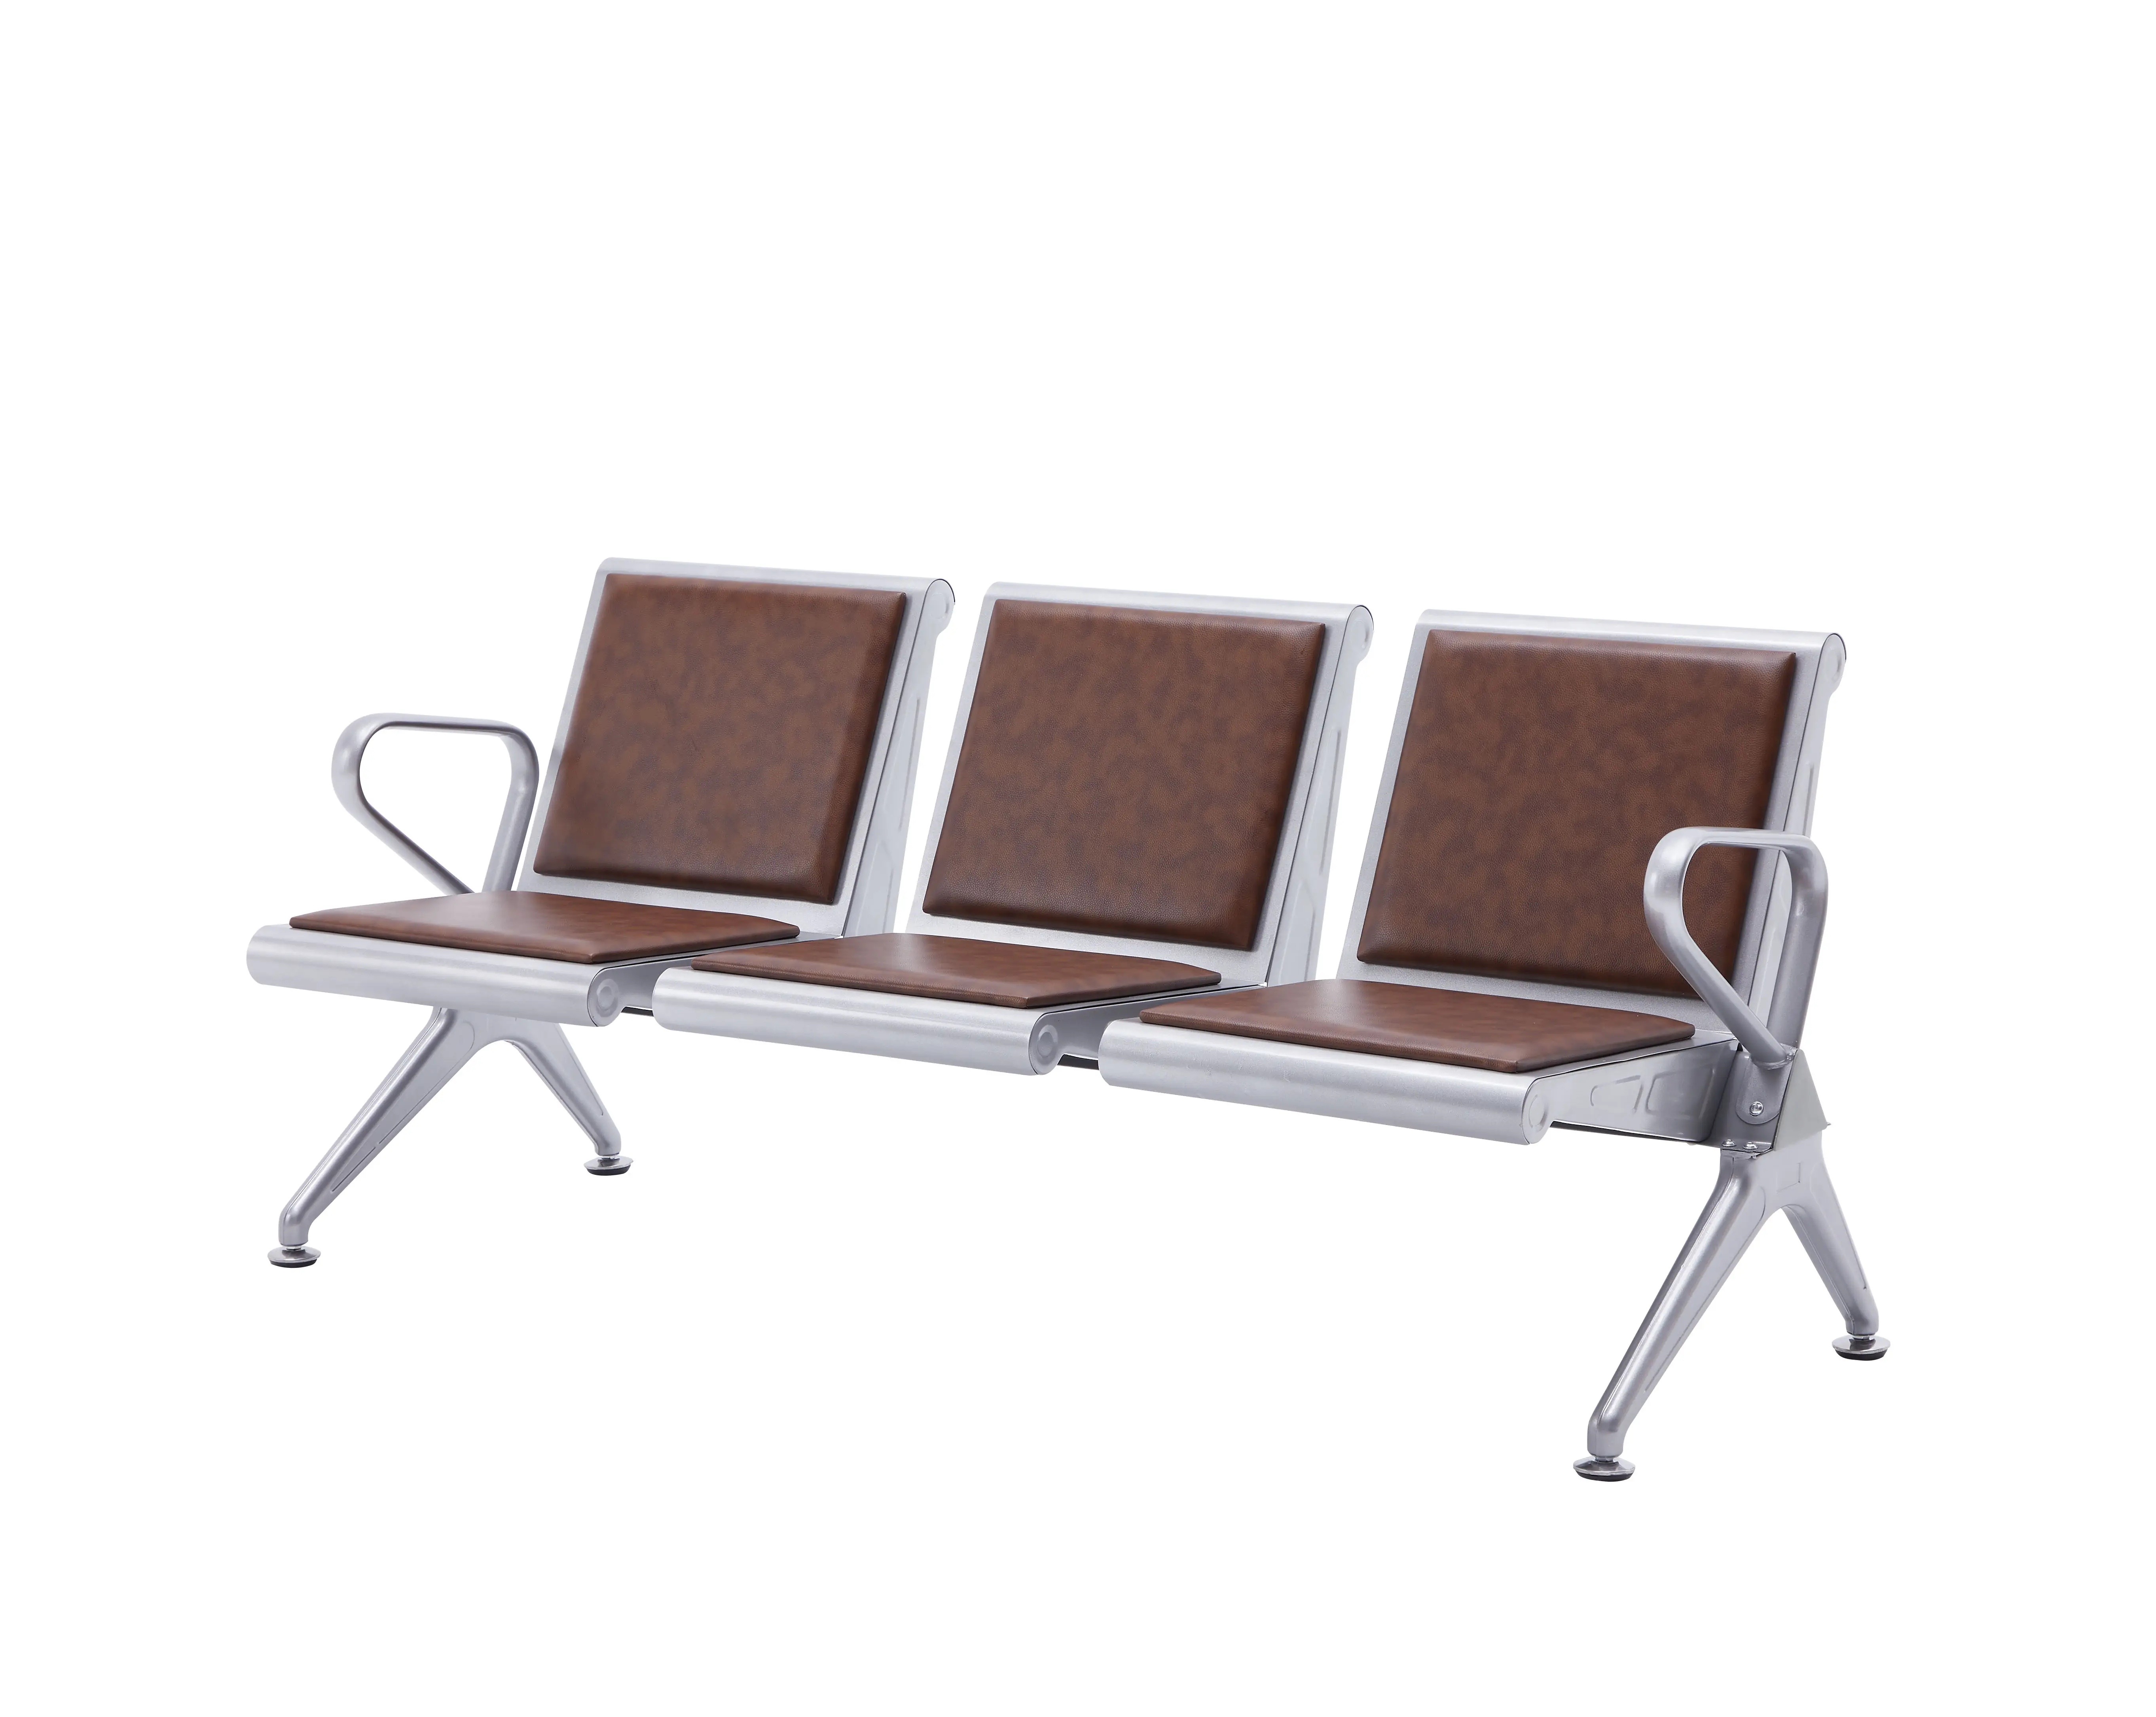 Sıcak satış yeni moda leopar baskı resepsiyon sandalye İtalyan pu deri bekleme sandalyeleri